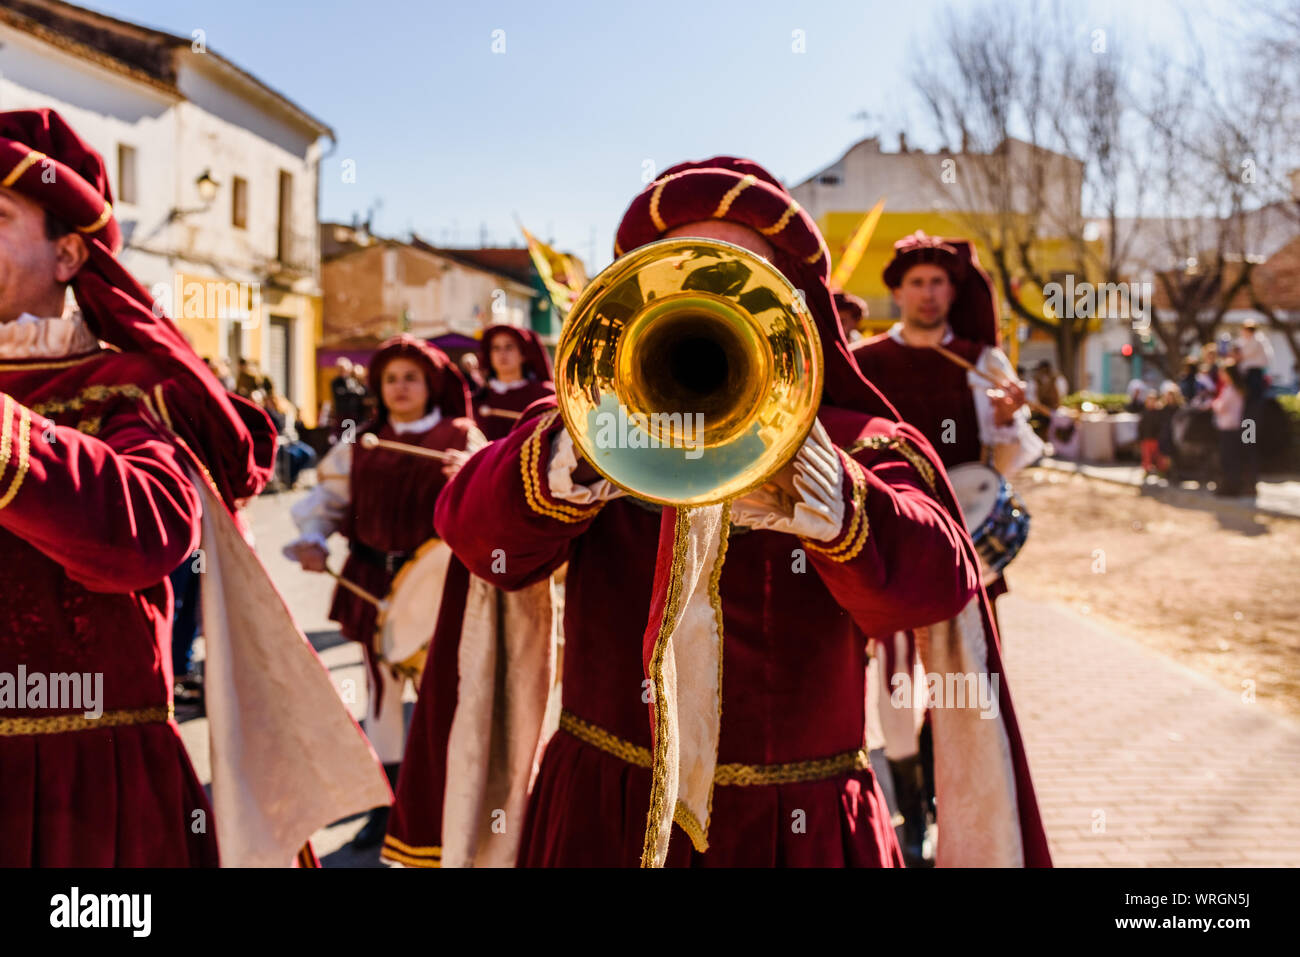 Valencia, Espagne- 27 Janvier, 2019 : trompettistes habillés comme des troubadours médiévaux à jouer de la trompette au cours d'une fête médiévale. Banque D'Images